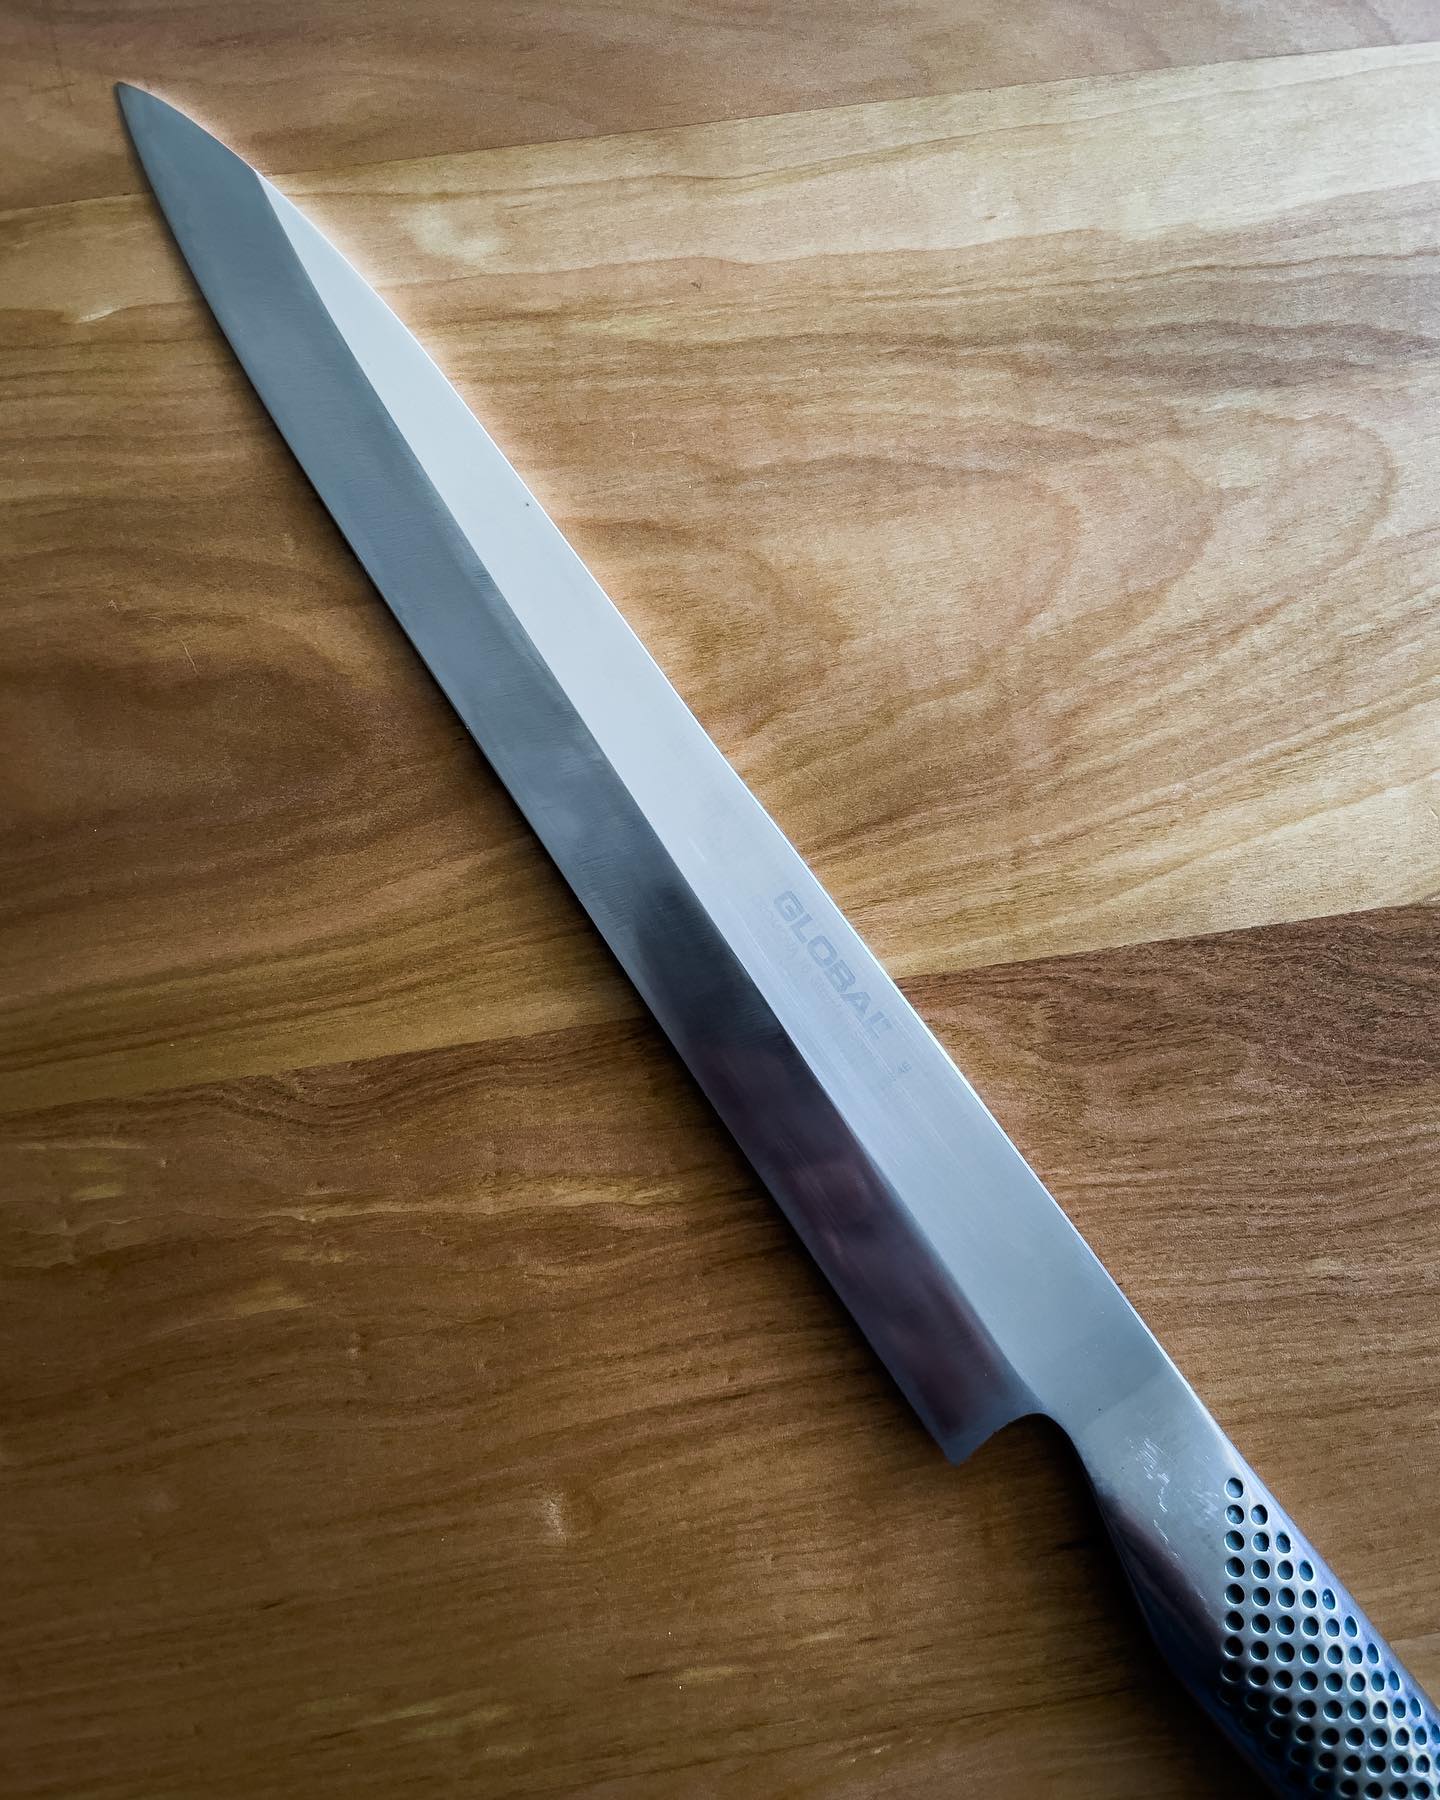 Si no sabes cómo se afila un cuchillo de un solo bisel (Deba o Yanagi por ejemplo), simplemente no lo intentes. Asesórate con alguien que sepa y que pueda transmitirte la forma correcta. Si puedes toma clases 👍🏼
En la foto, Yanagi que requirió corregir hoja y filo debido a malos afilados previos.
Listo para entrega!

.
.
.
#teloafilo #afilado #cuchillo #piedra #filo #cocina #cuchillosjaponeses #cocinero #restaurant #chef #santiago #chile #instachile #chilegram #corte #afilador #gastronomia #whetstone #sharpening #knives #edge #sharp #grind